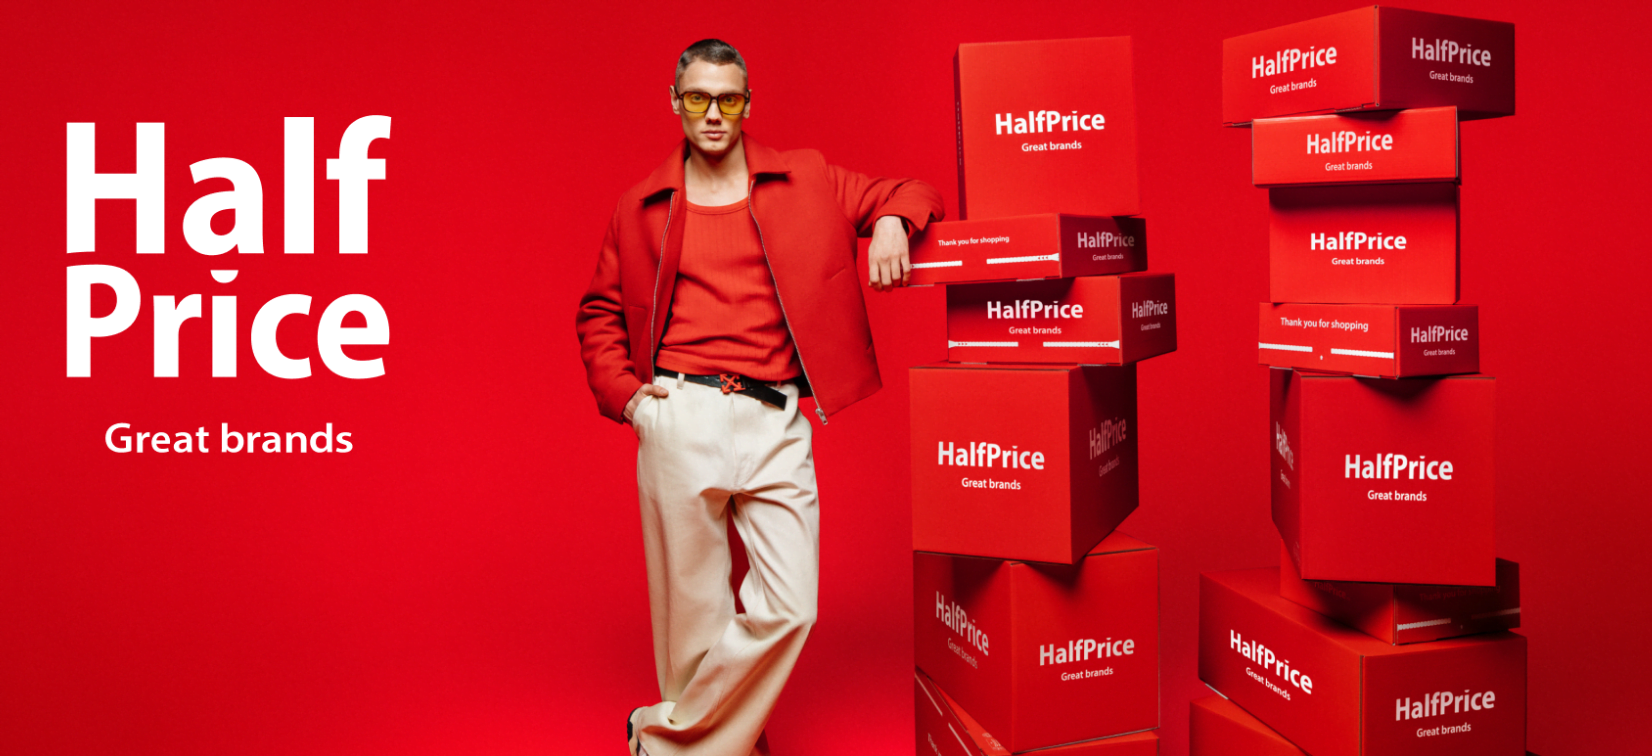 Mężczyzna w czerwonym garniturze pozuje obok wieży z czerwonych pudeł z napisem "HalfPrice Great brands", na czerwonym tle z tekstem "HalfPrice Great brands".